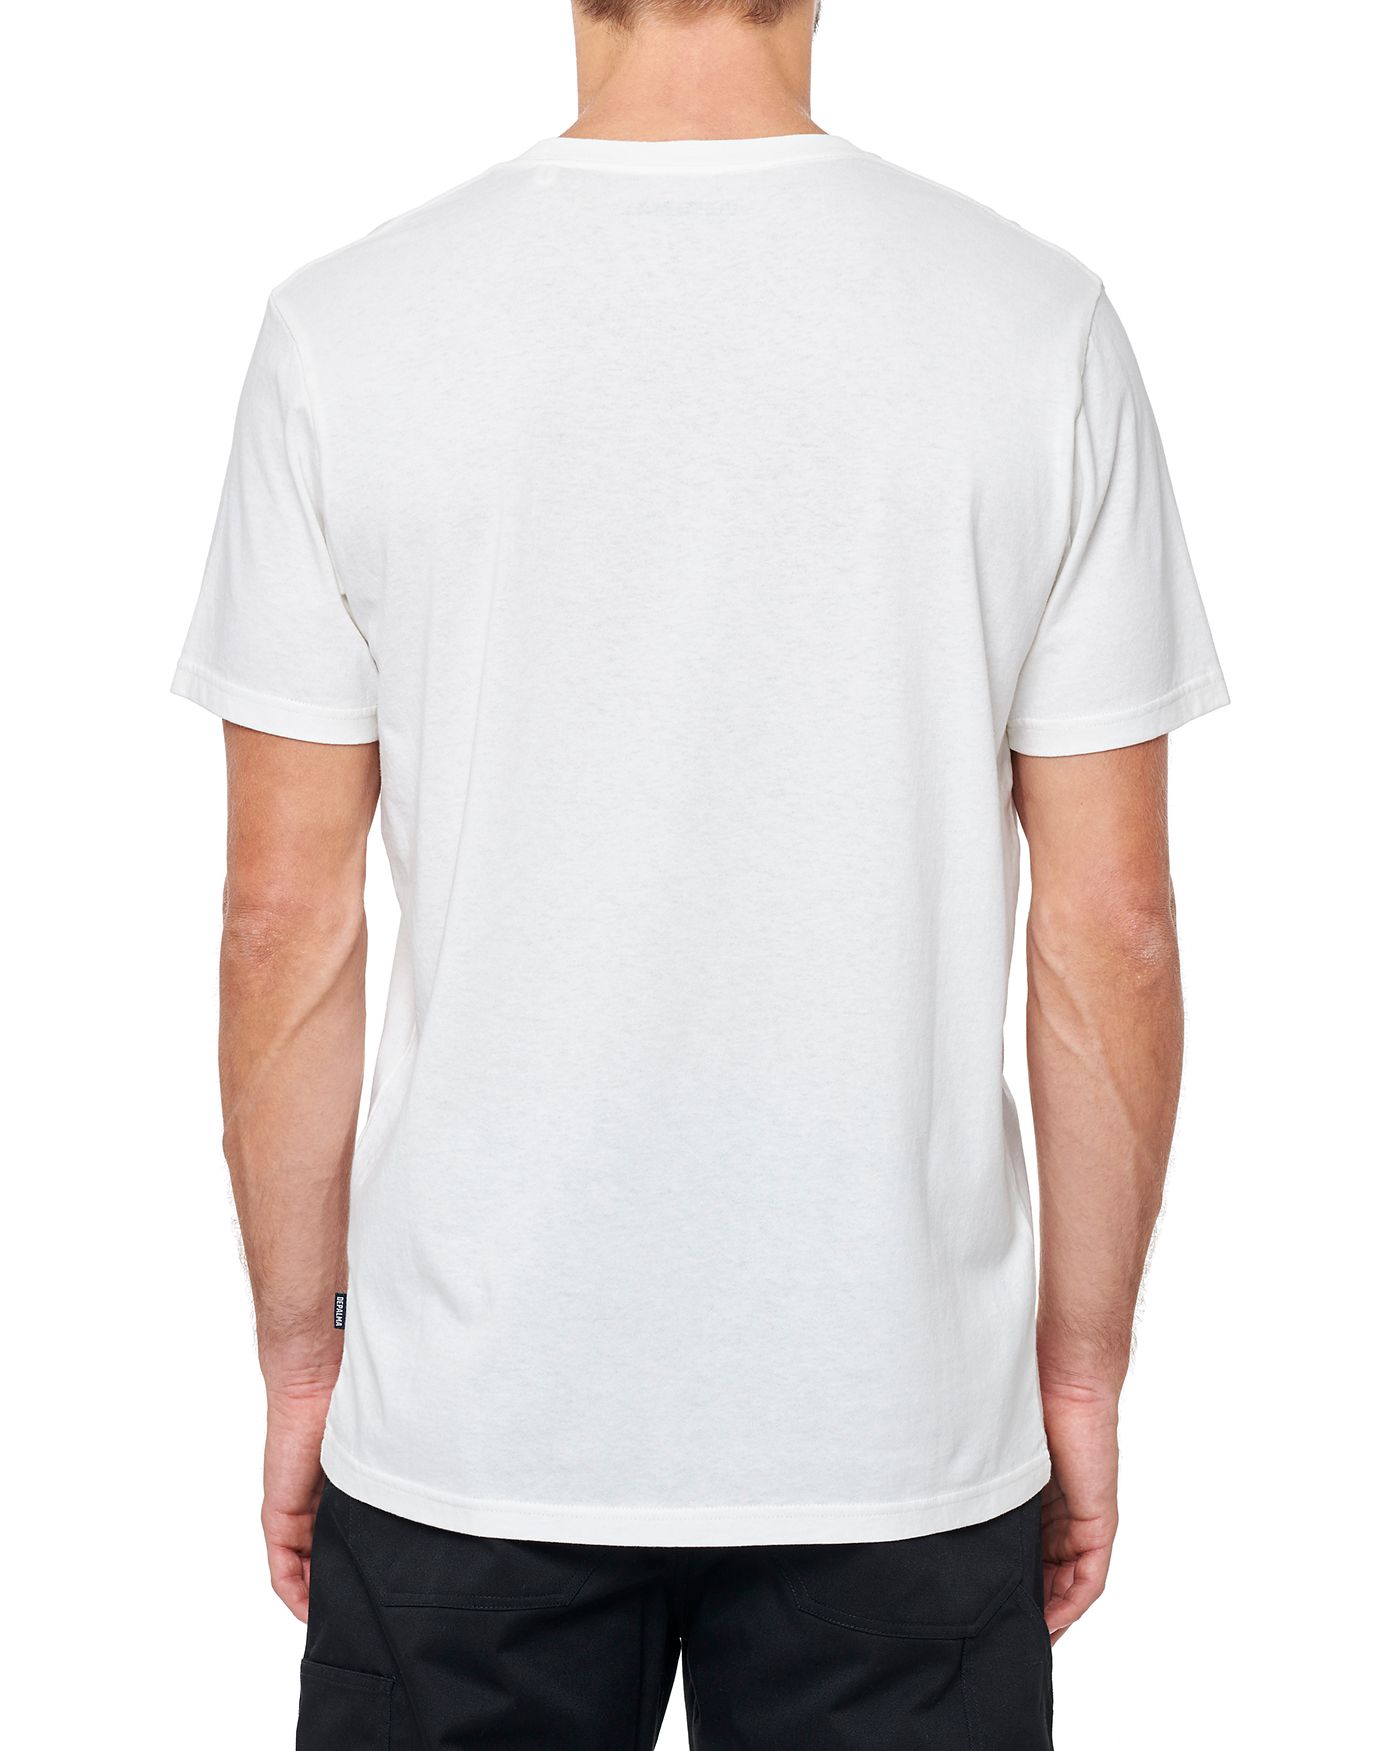 Photo of Skull & Arrows S/S T-shirt, White